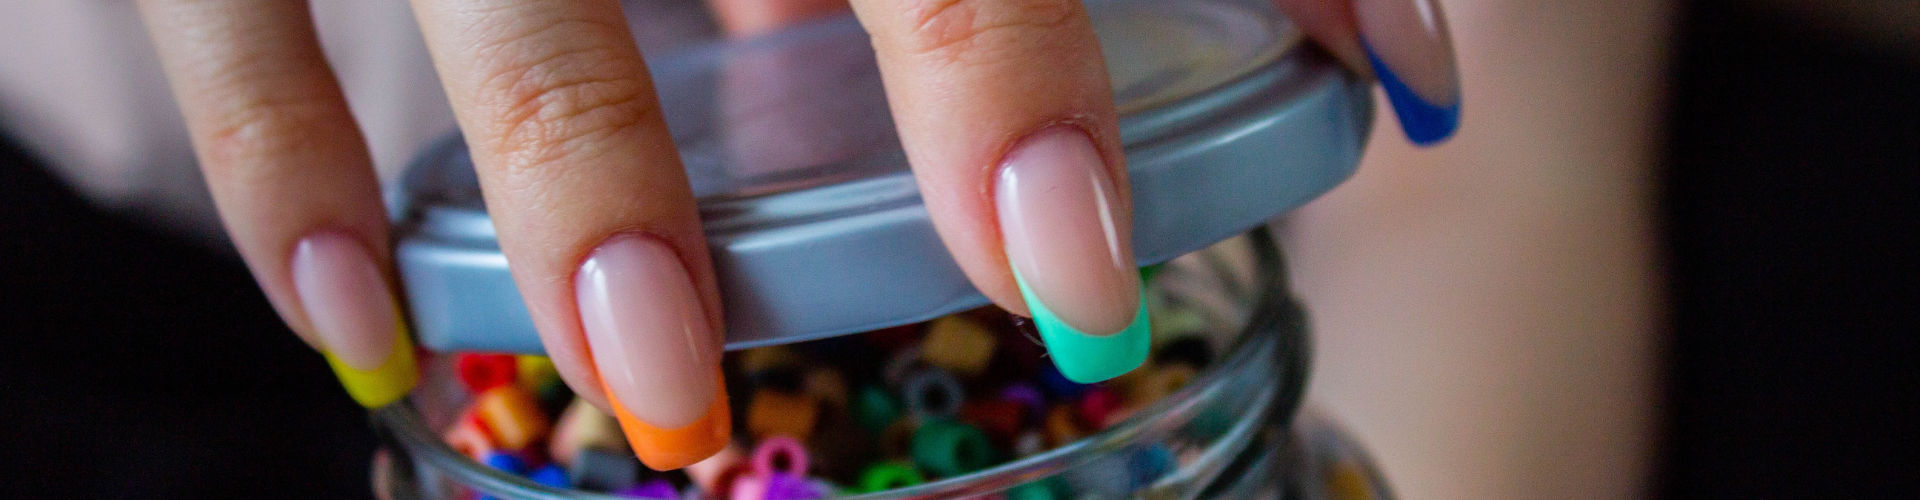 Fabriquez un vernis à ongles sans danger pour vos enfants